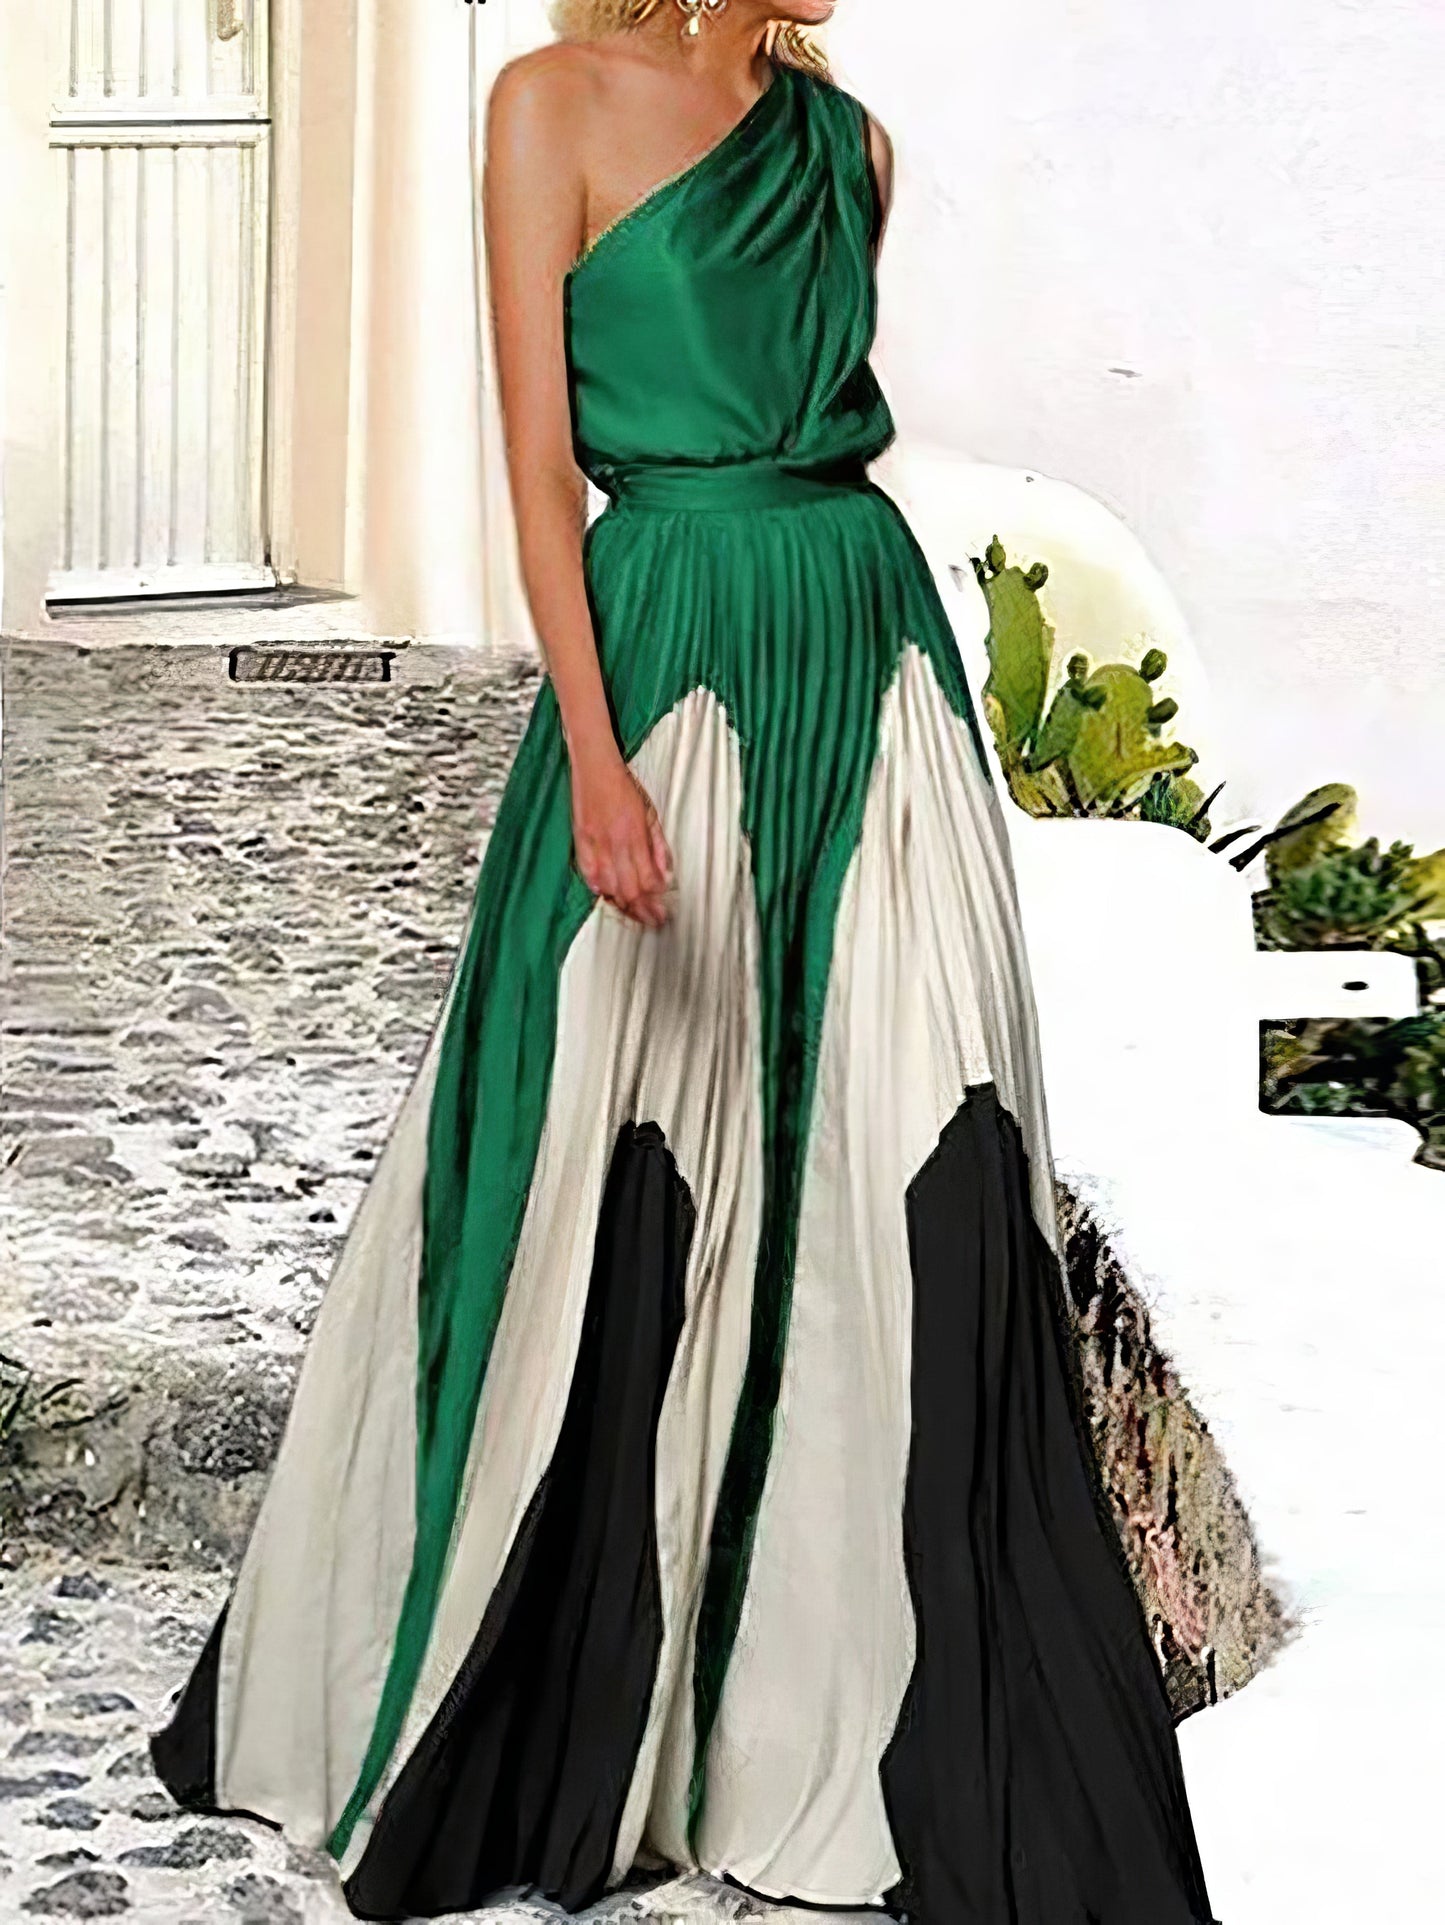 Maxi Dresses - Elegant One Shoulder Colorblock A Line Prom Dress - MsDressly